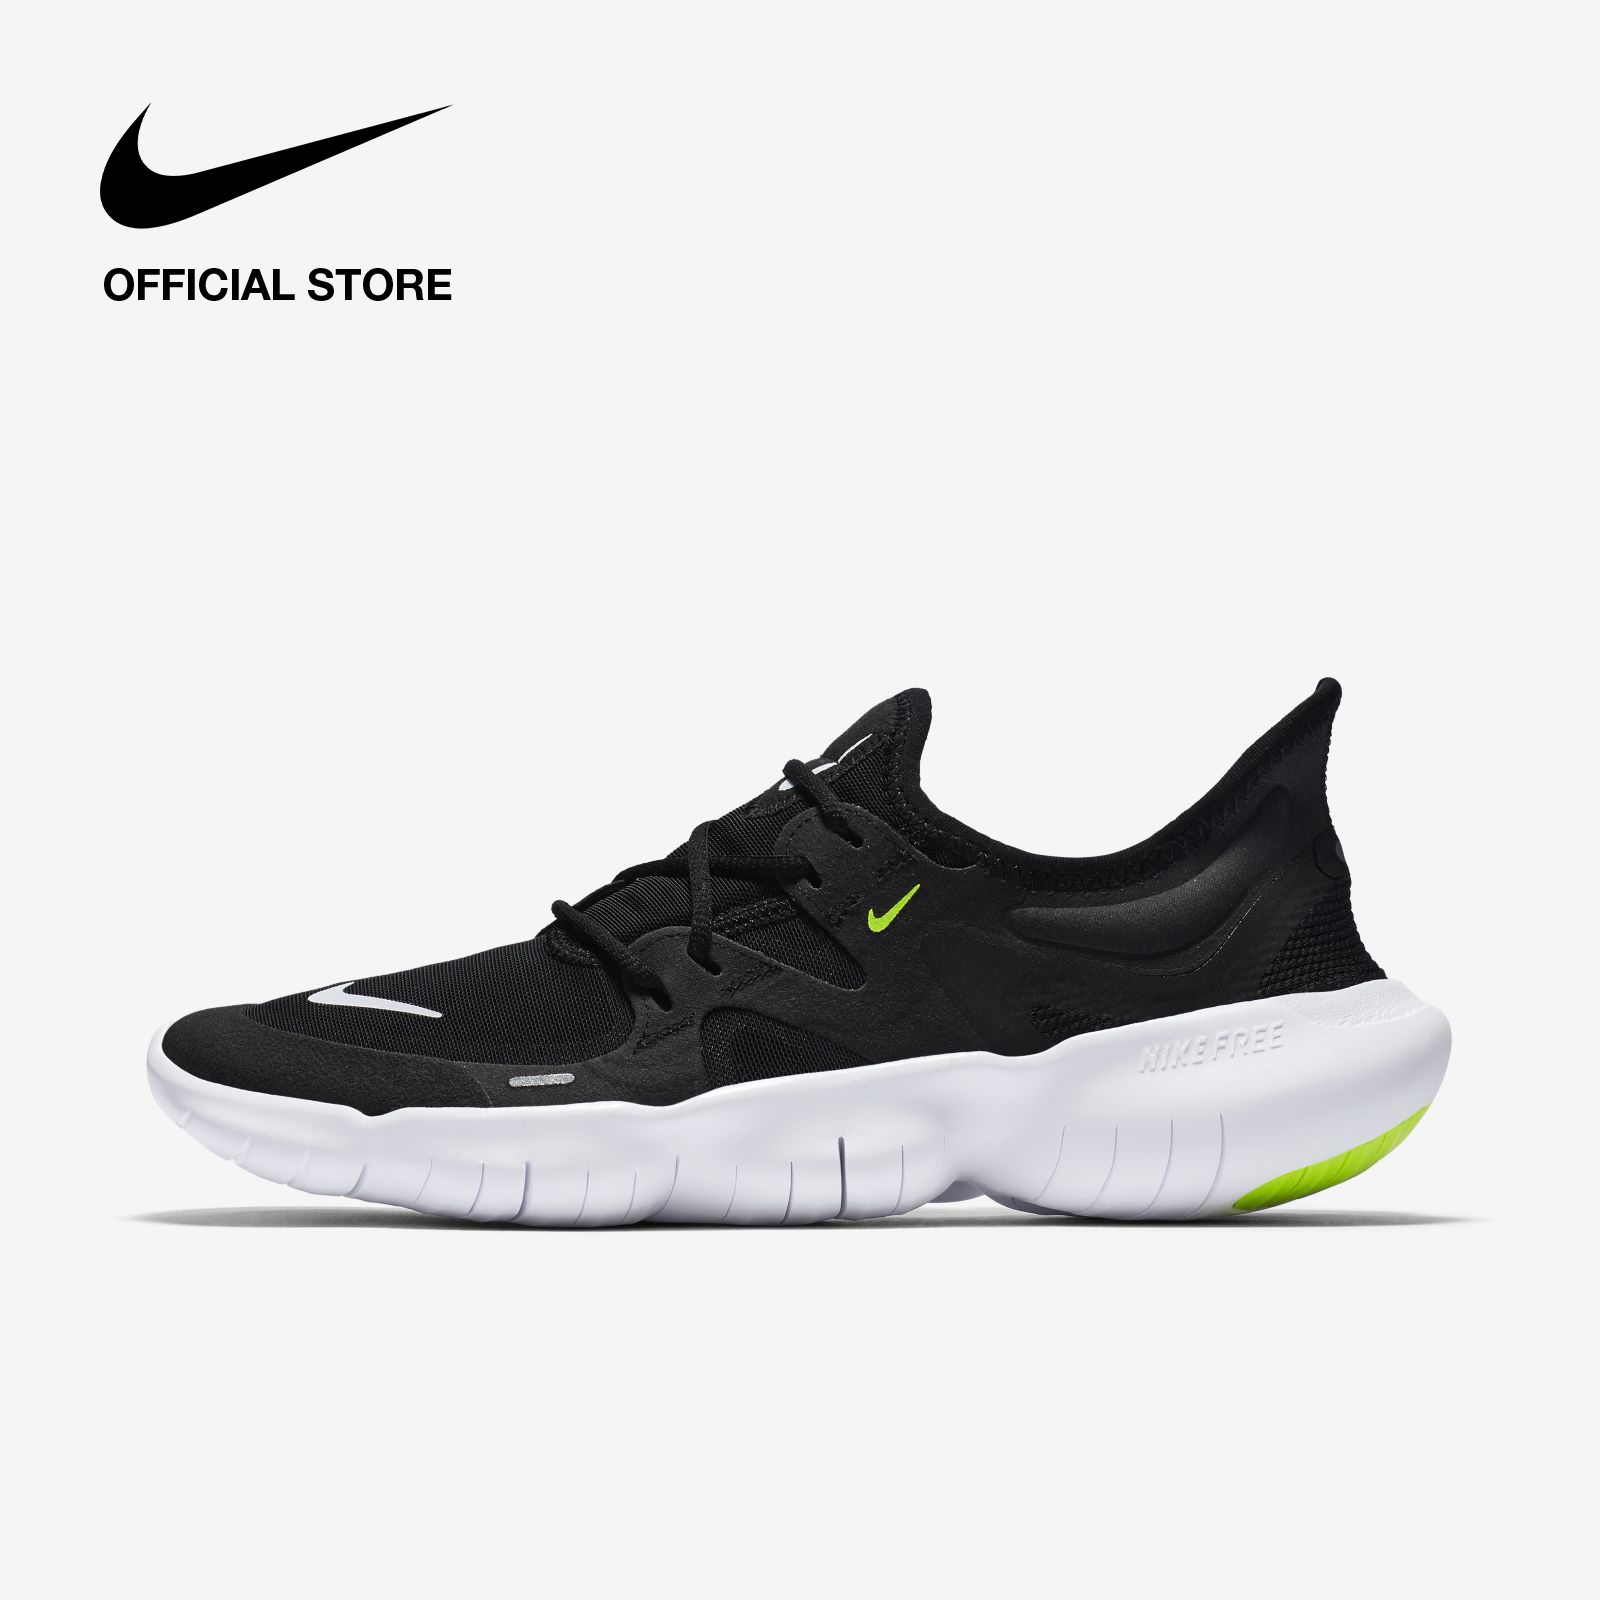 Nike Women's Free RN 5 Running Shoes - Black ไนกี้ รองเท้าวิ่งผู้หญิง ฟรี อาร์เอ็น 5 - สีดำ